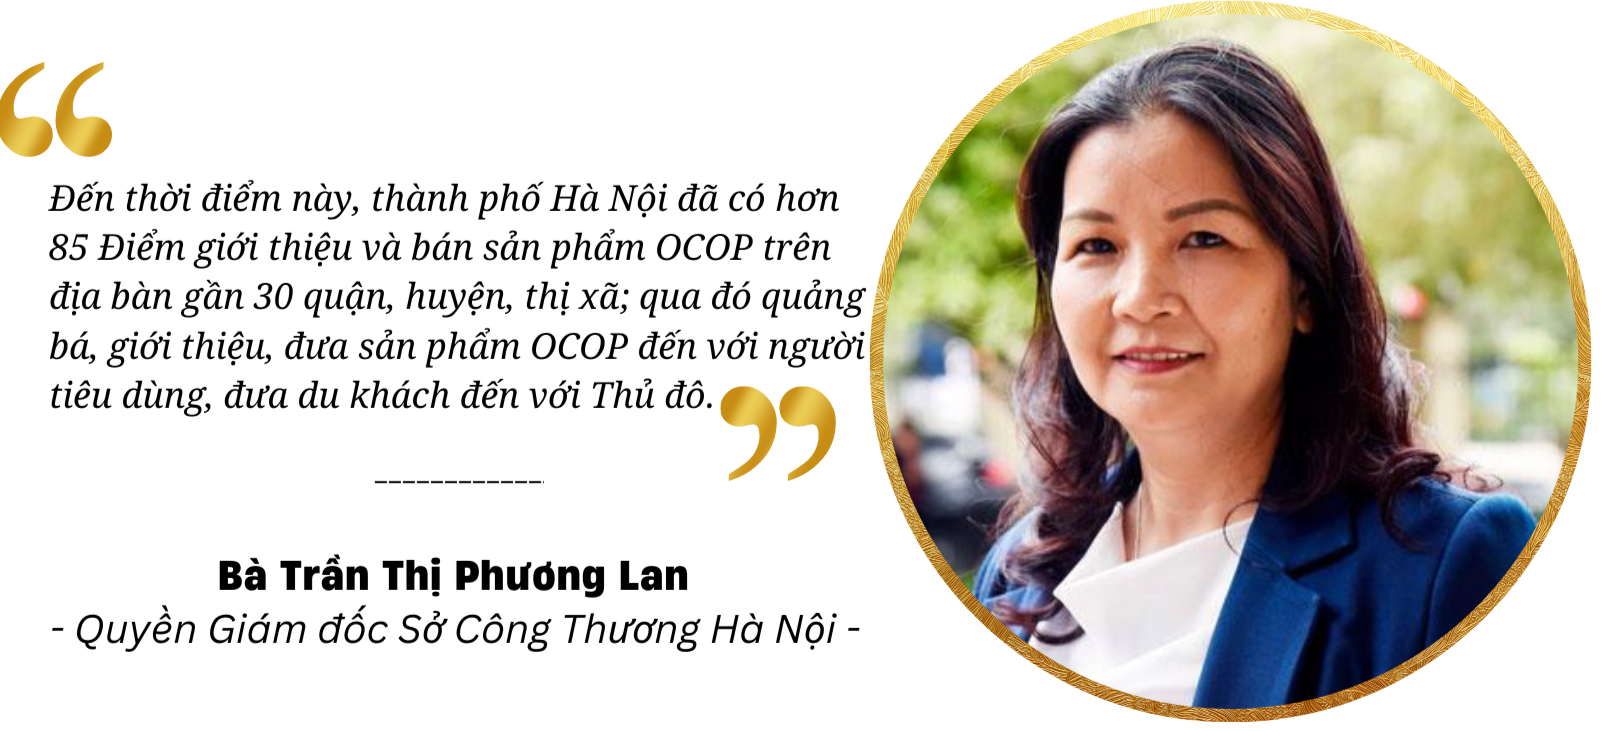 Longform | Chương trình OCOP trên địa bàn Hà Nội: Điểm tựa cho sản phẩm làng nghề Thủ đô